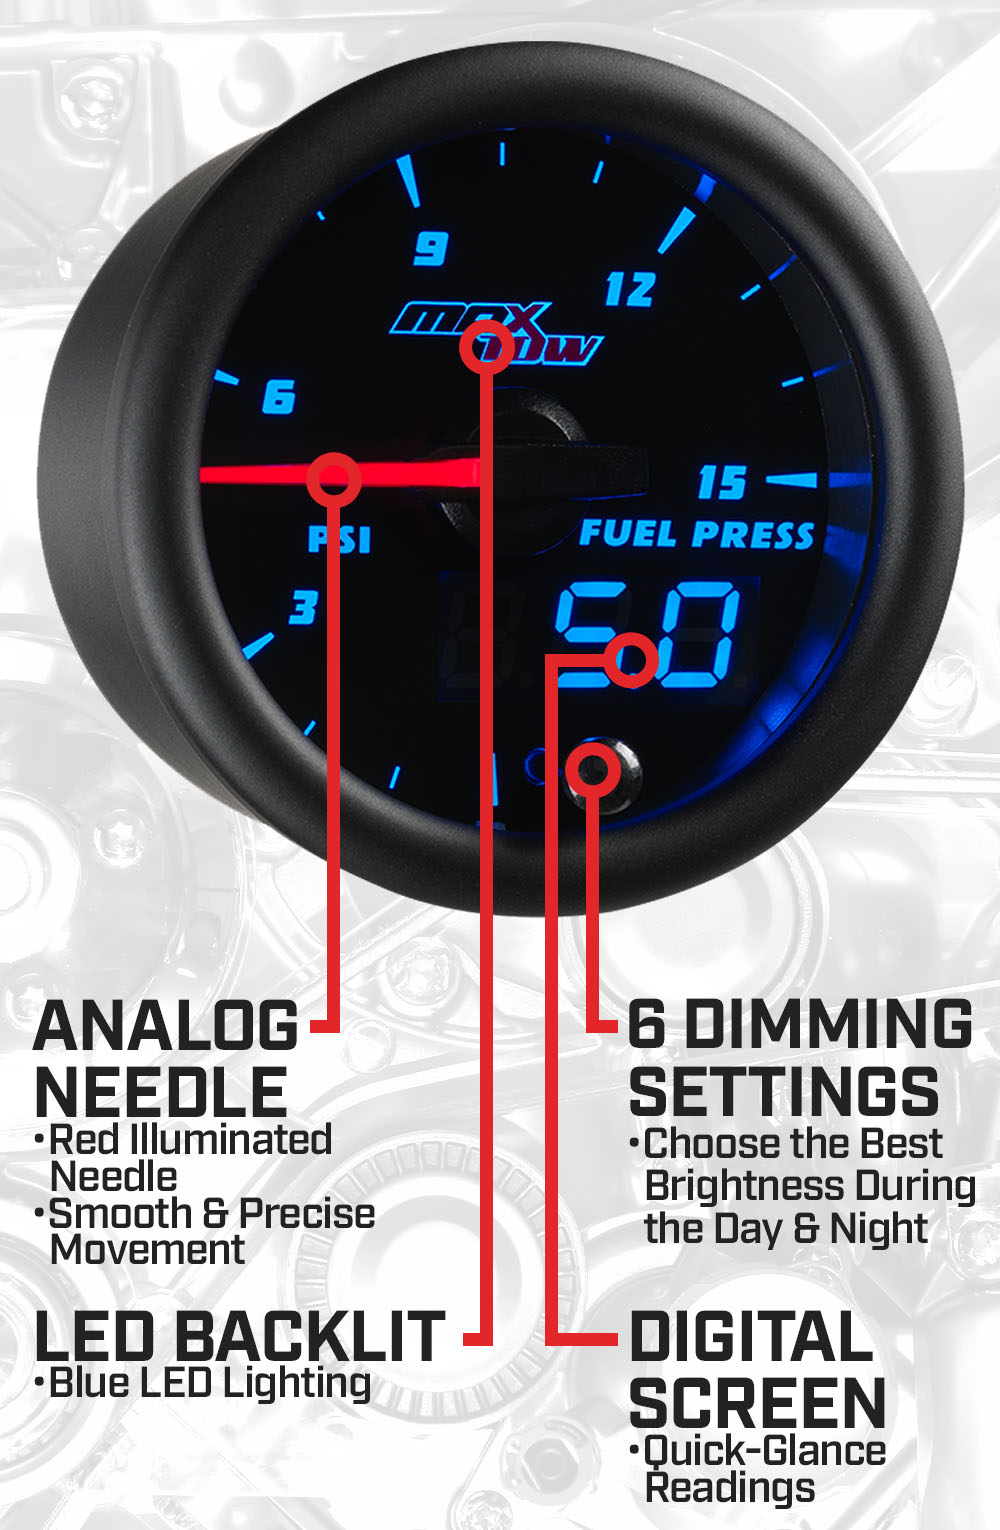 Black & Blue Double Vision 15 PSI Fuel Pressure Gauge Features